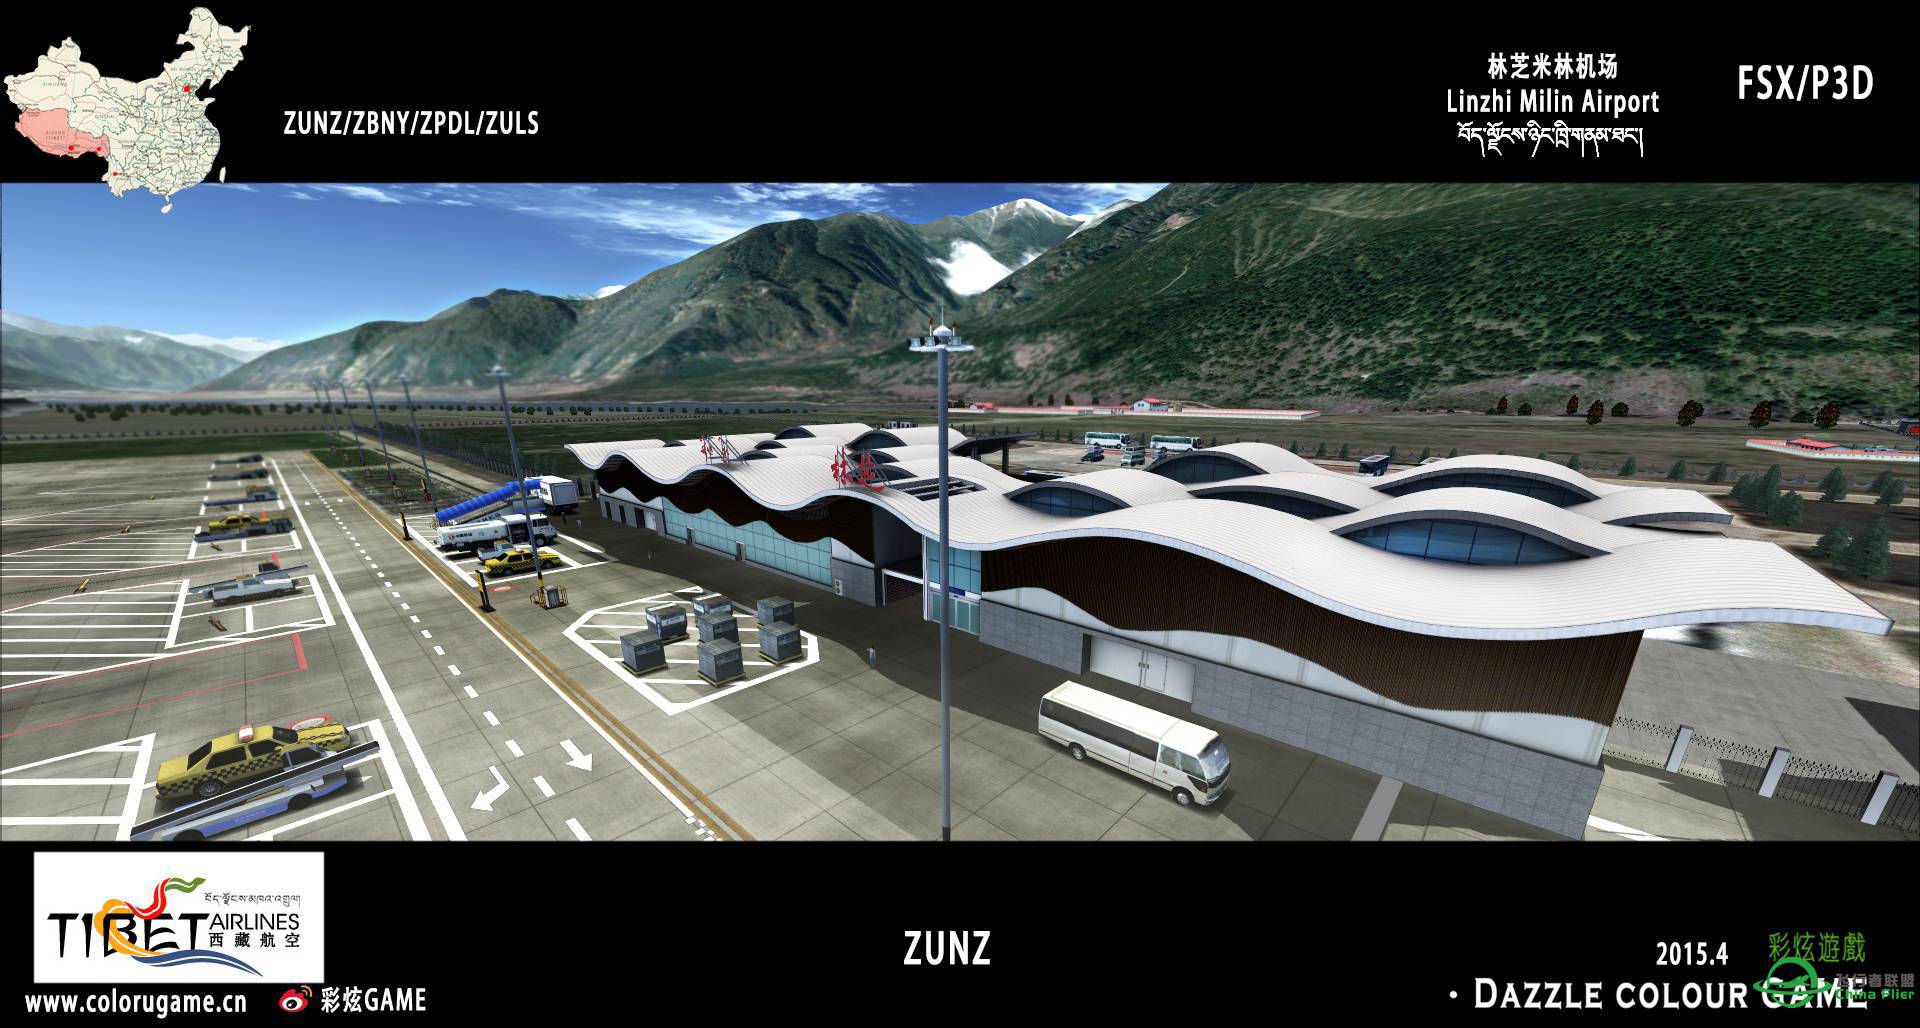 彩炫地景：林芝米林机场（ZUNZ）正式发布！-1047 